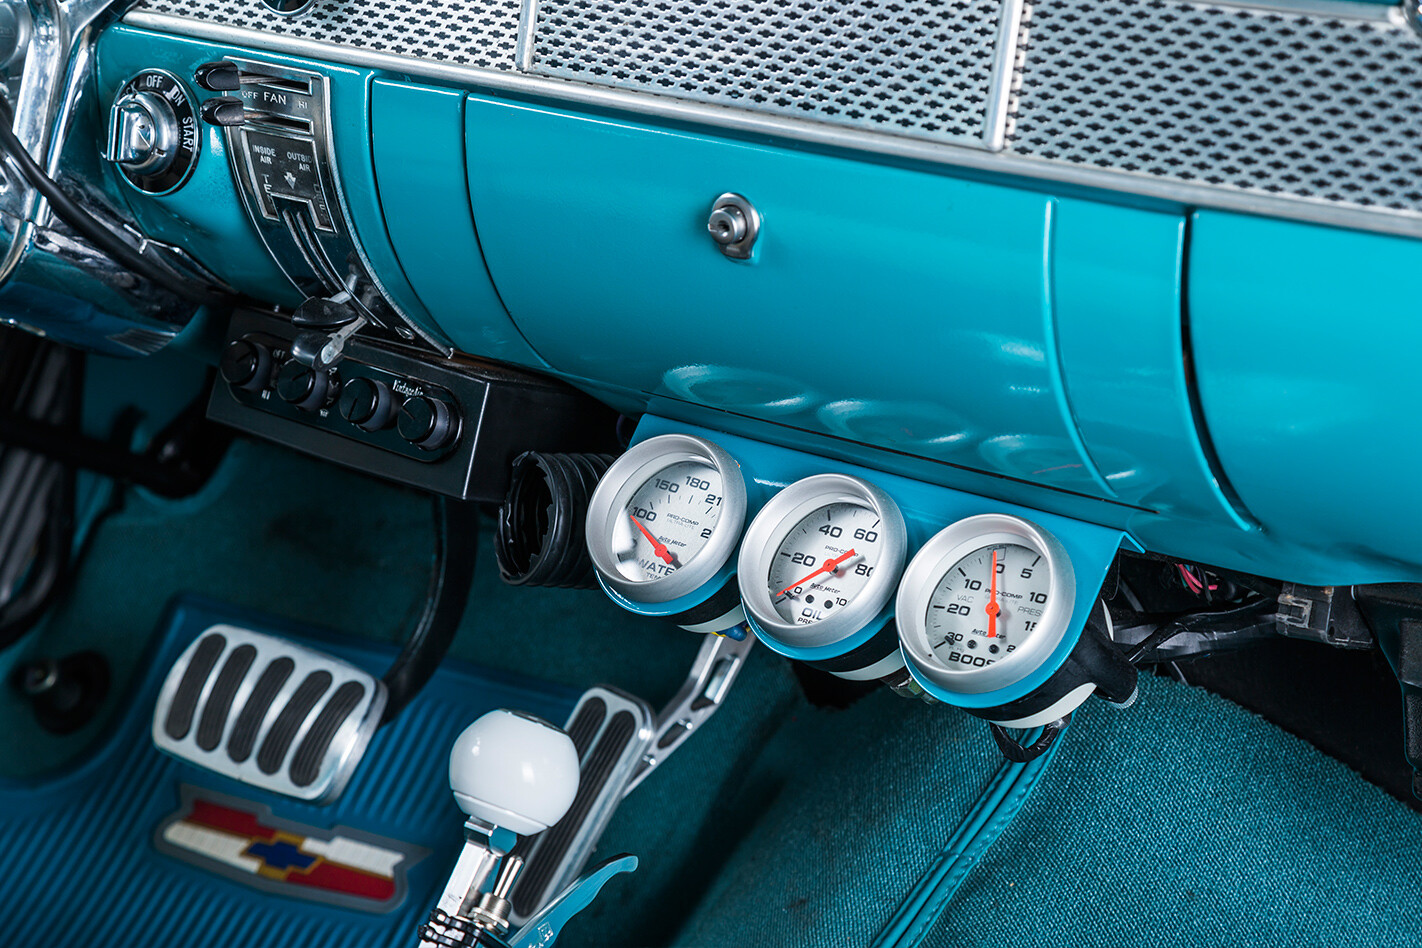 1955 Chevrolet gauges